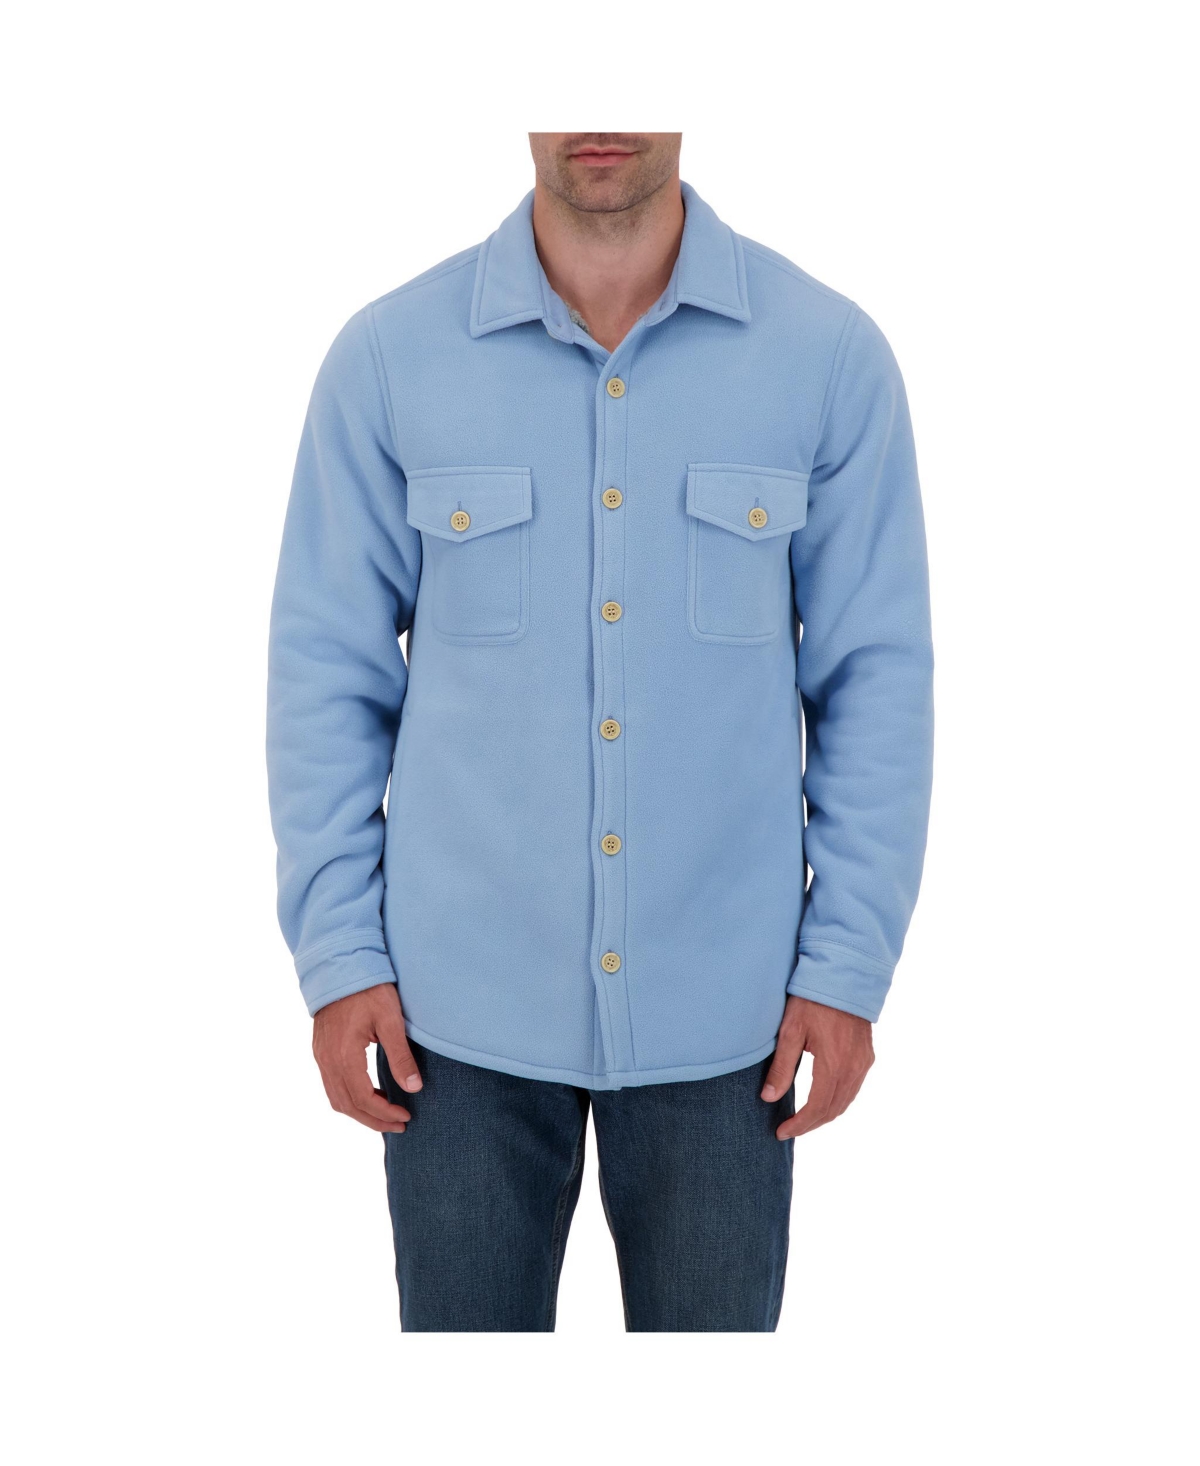 Men's Jax Long Sleeve Solid Shirt Jacket - Chambray